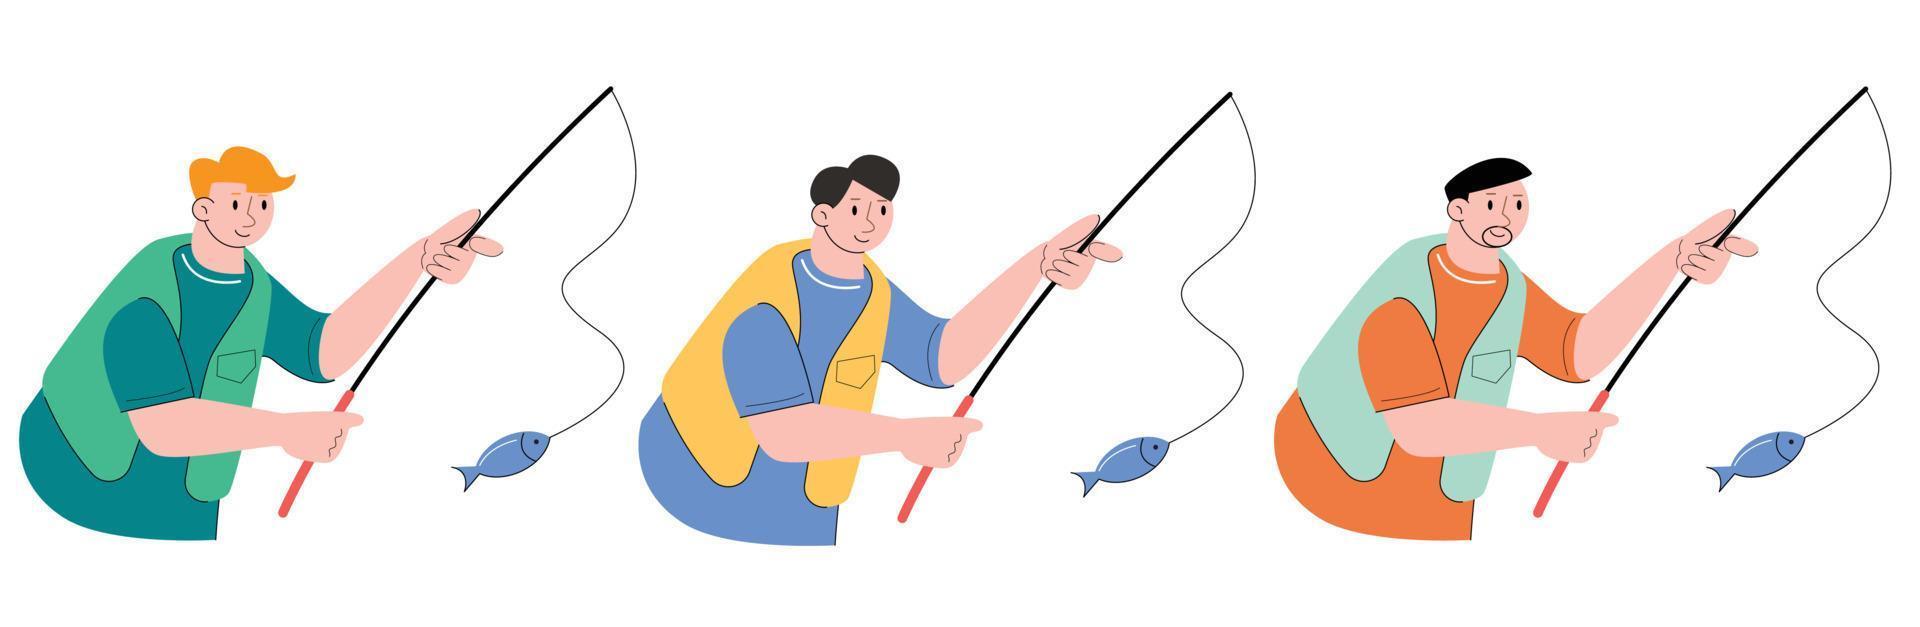 karakter mensen visvangst vector illustratie